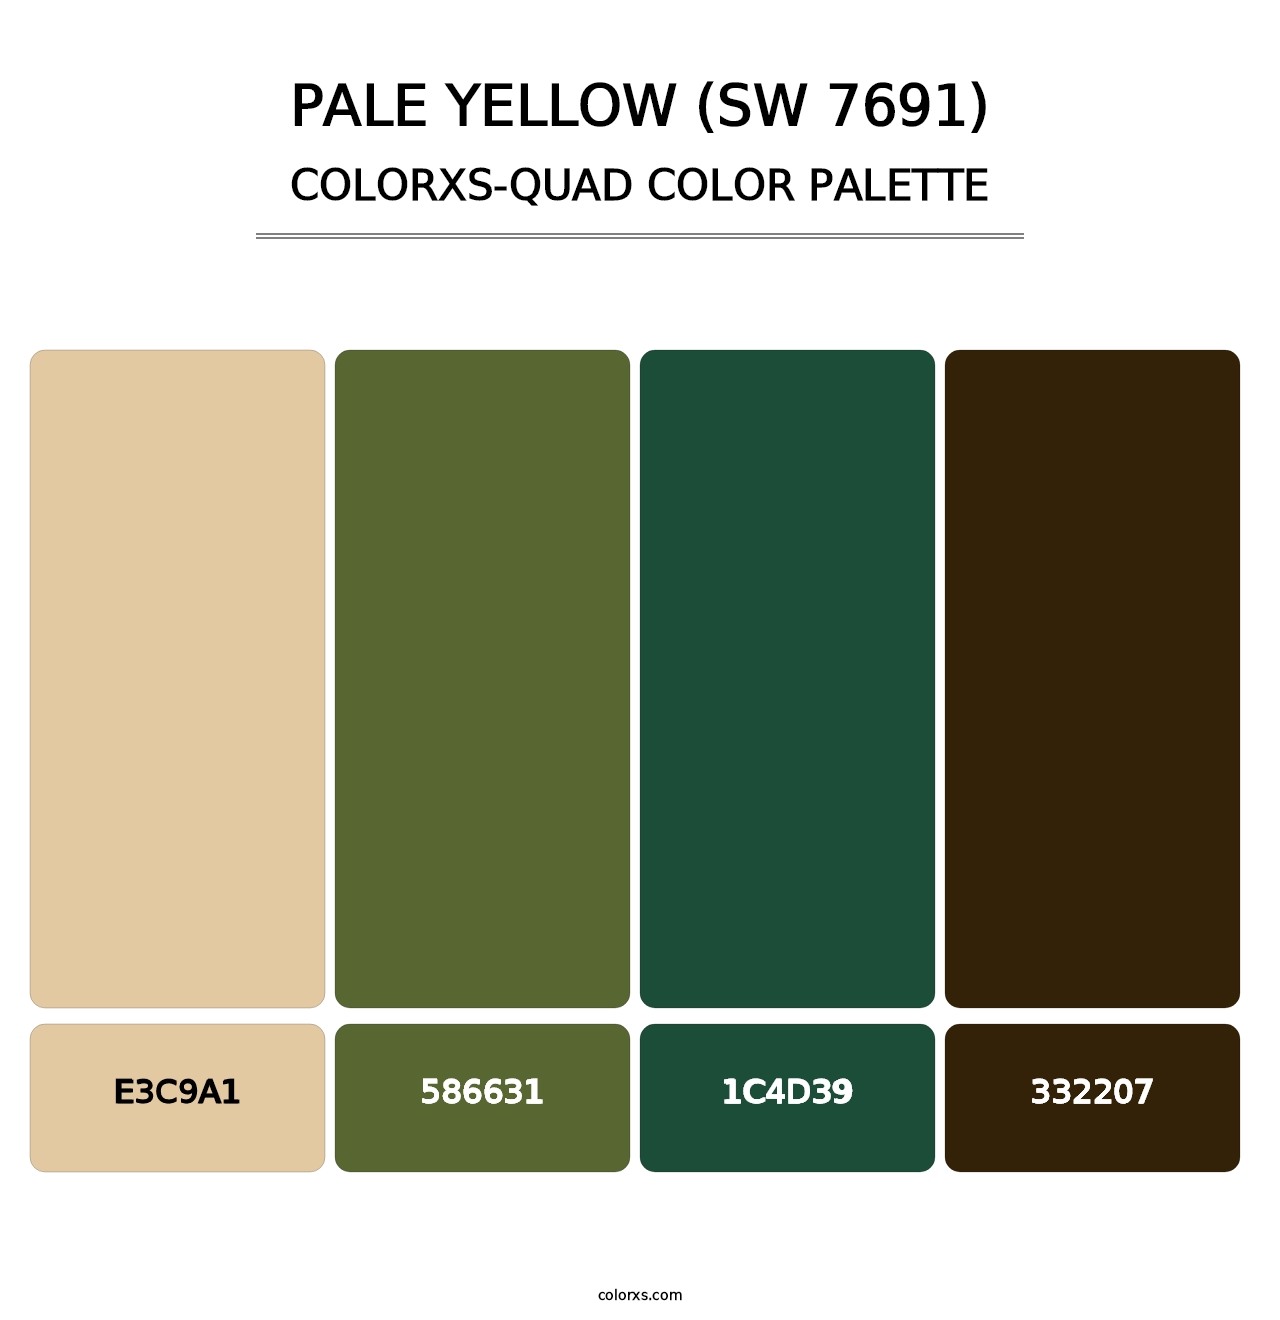 Pale Yellow (SW 7691) - Colorxs Quad Palette